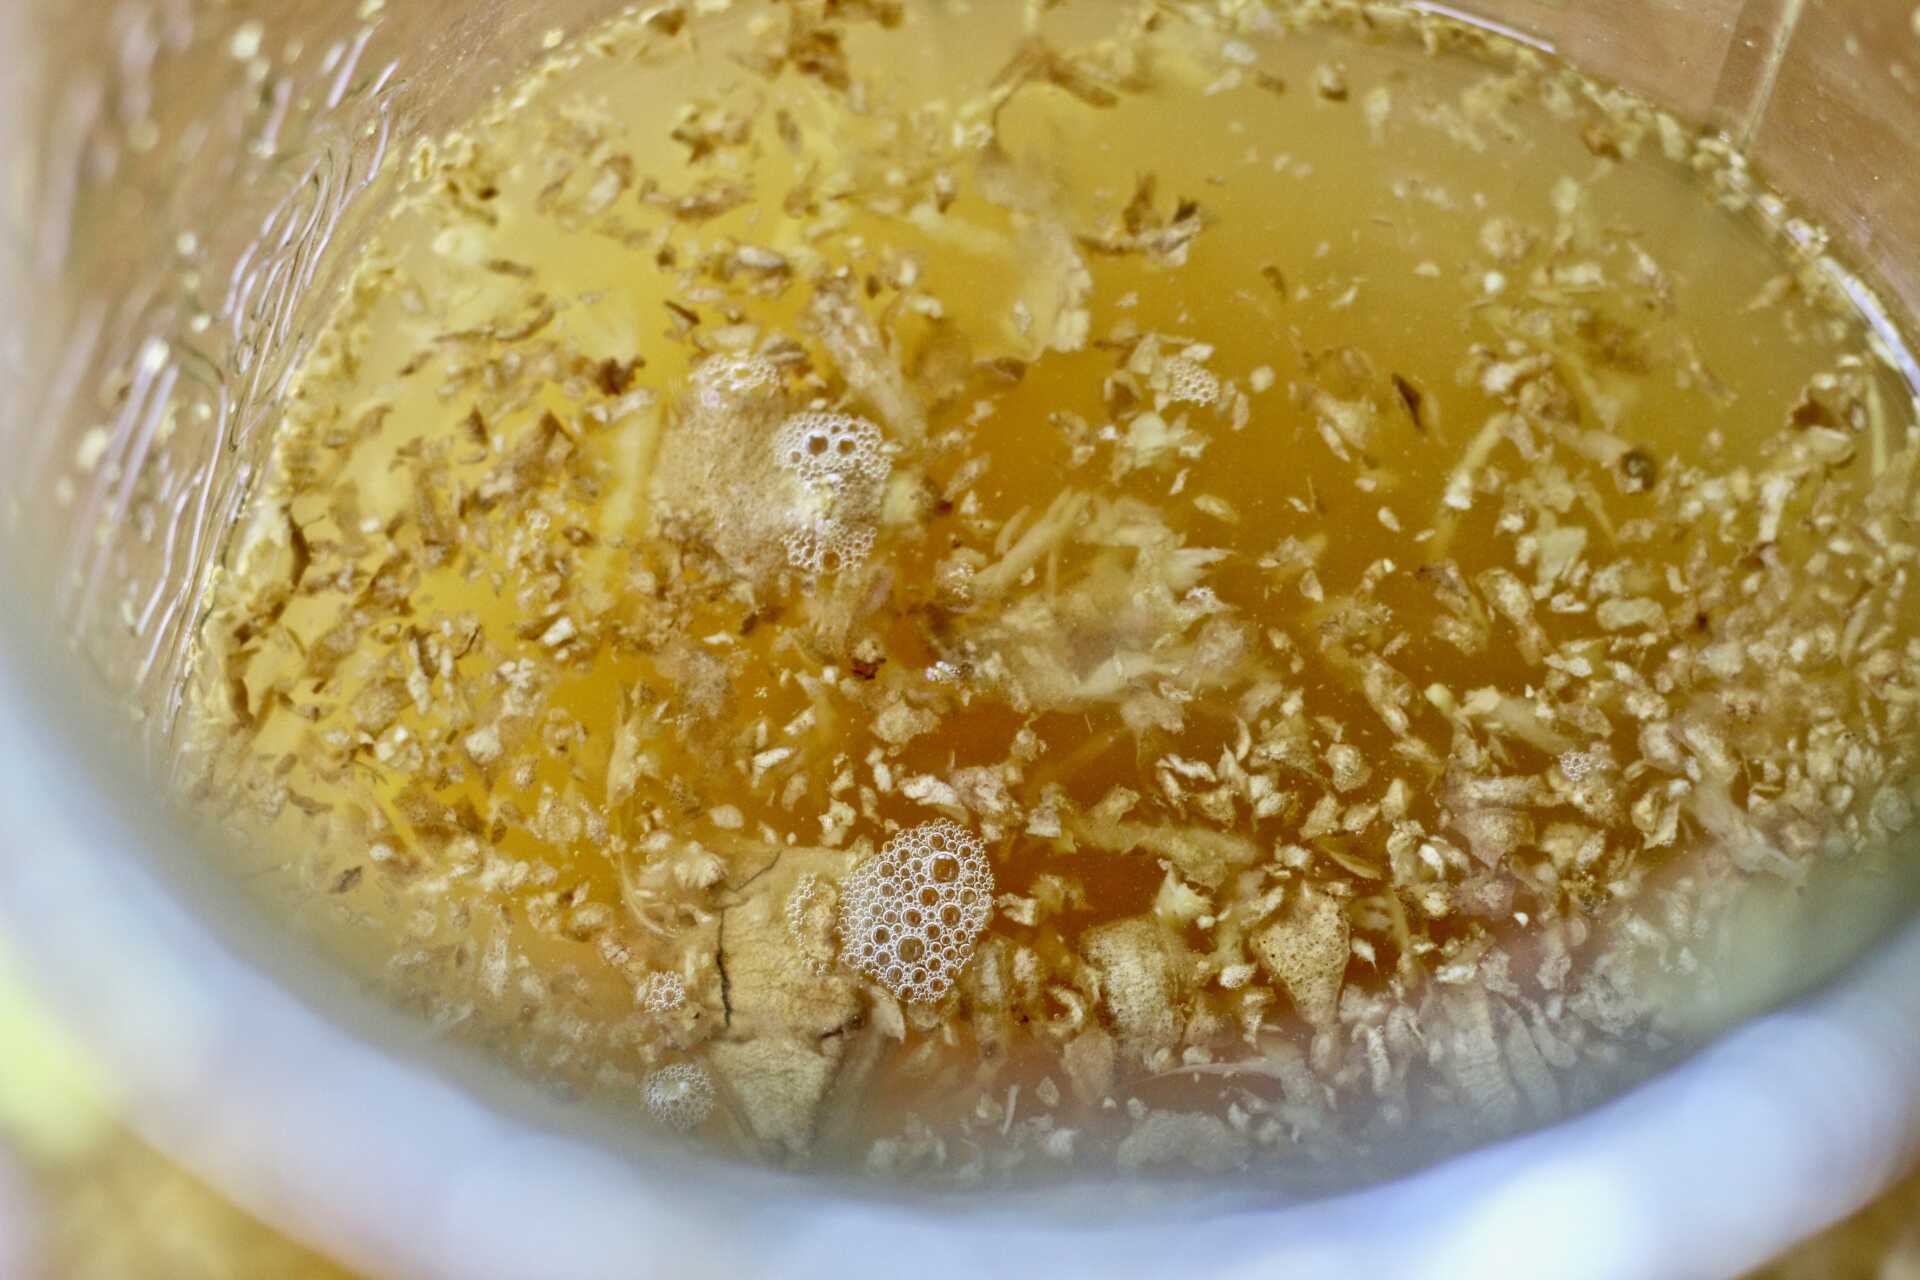 un bocal contenant du Ginger Bug, ce mélange de gingembre, d'eau et de sucre permettant de faire fermenter des jus et des boissons